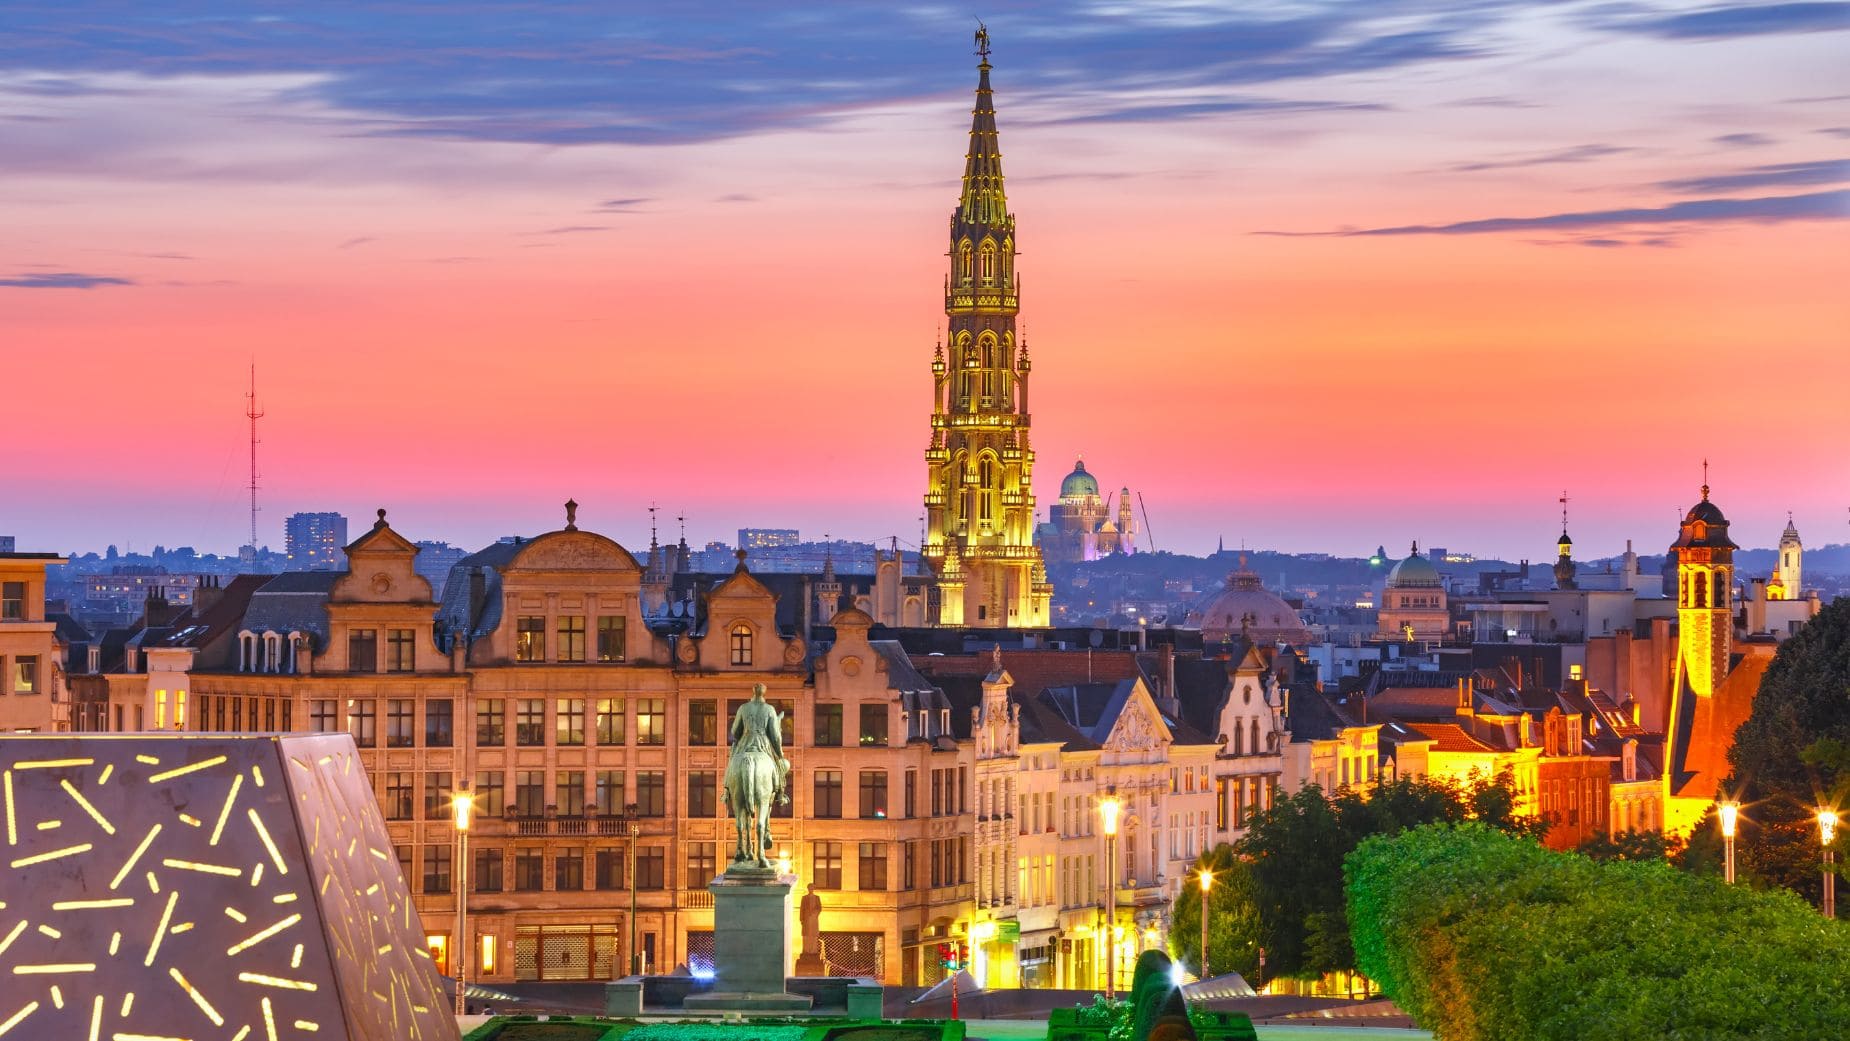 Viajes El Corte Inglés te ofrece viajar a Bruselas a precio reducido